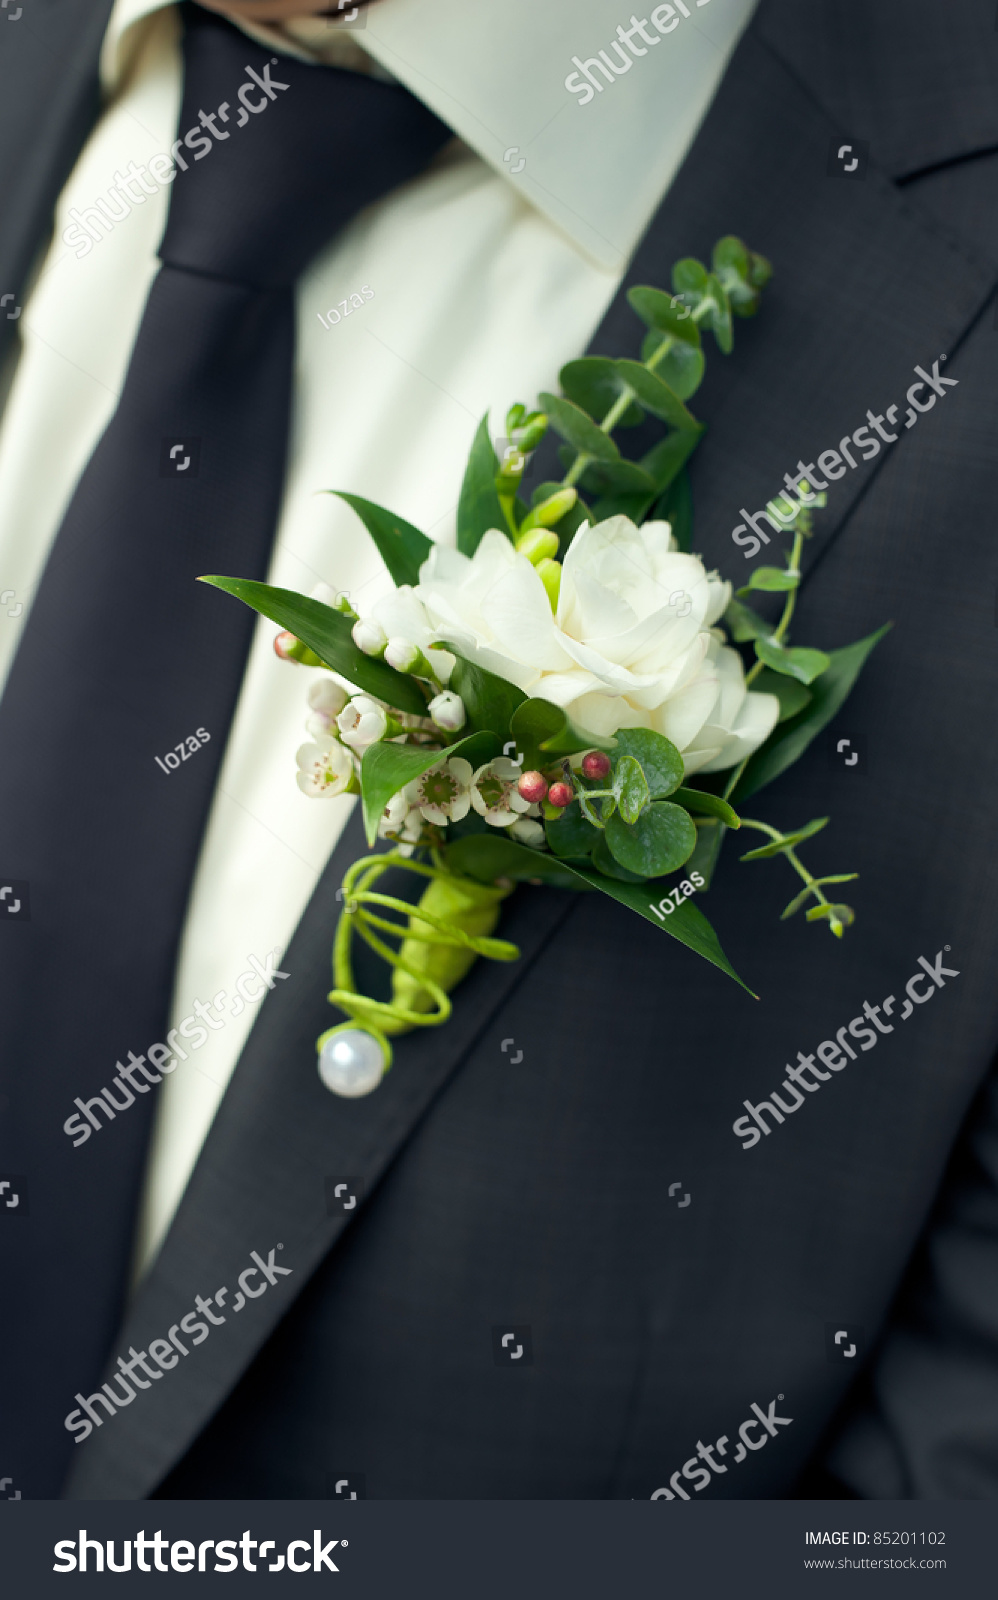 White Freesia Wedding Boutonniere On Suit Stock Photo Edit Now 85201102